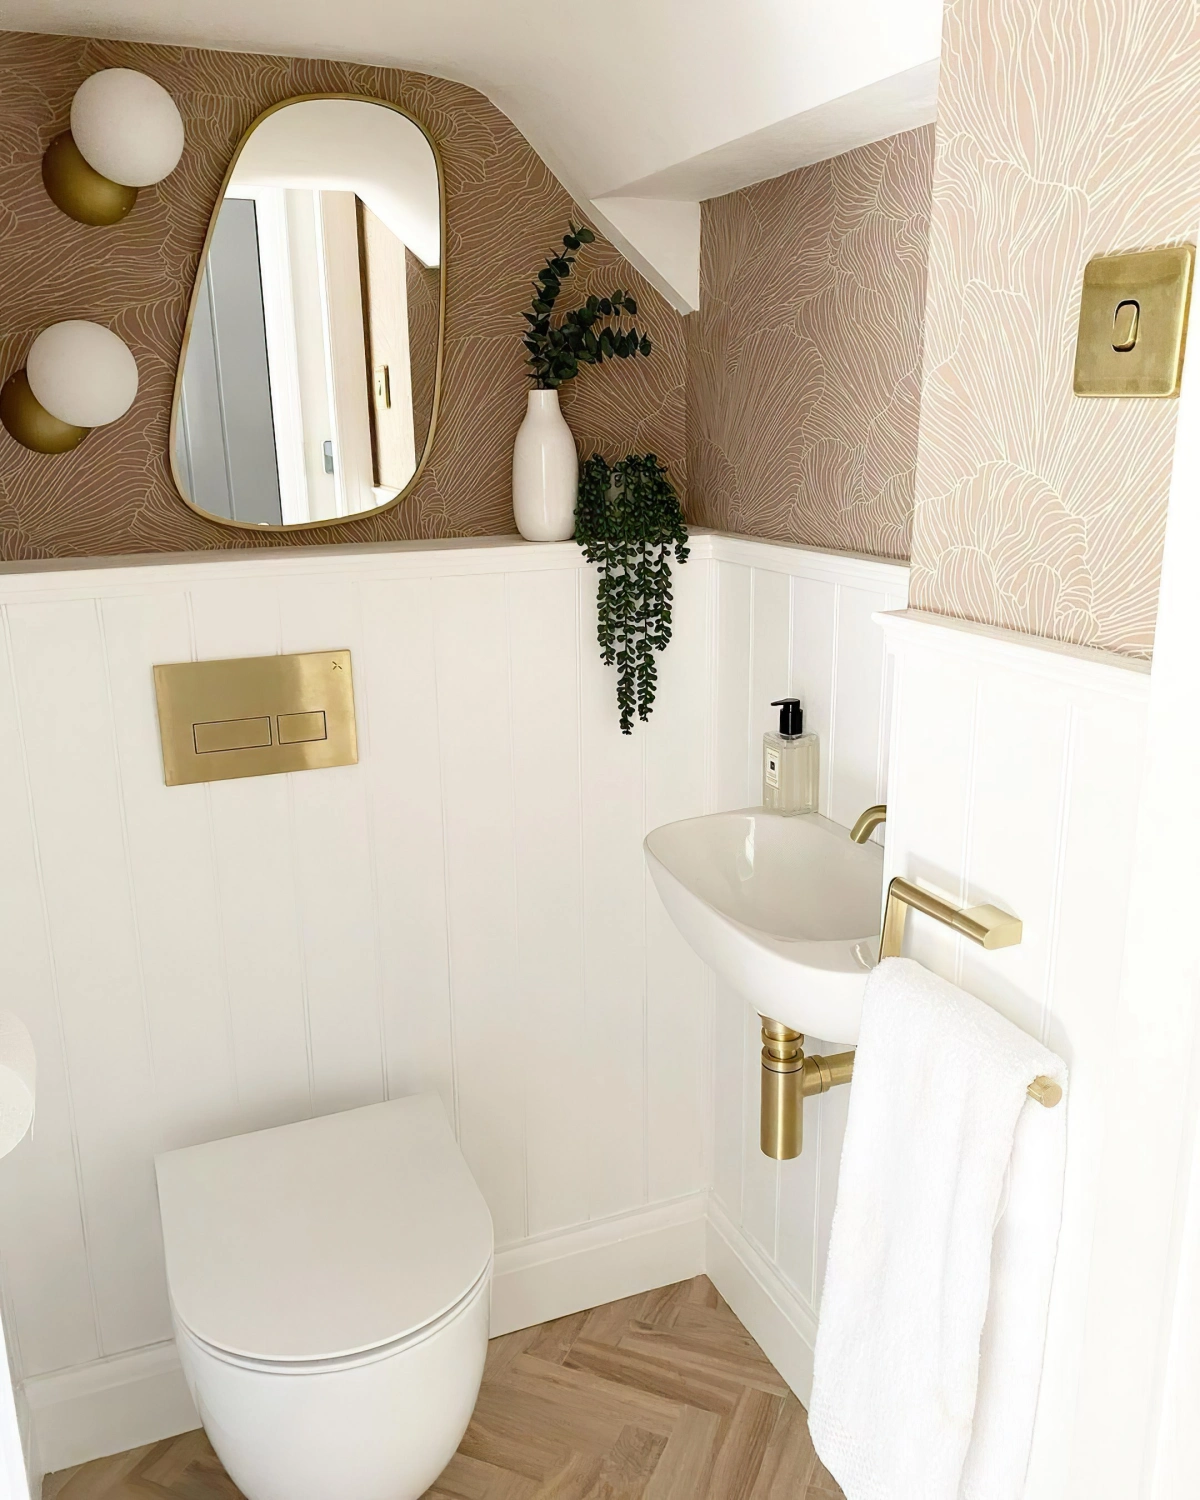 deco wc petit espace sous pente papier peint beige panneaux blancs cuvette suspendue